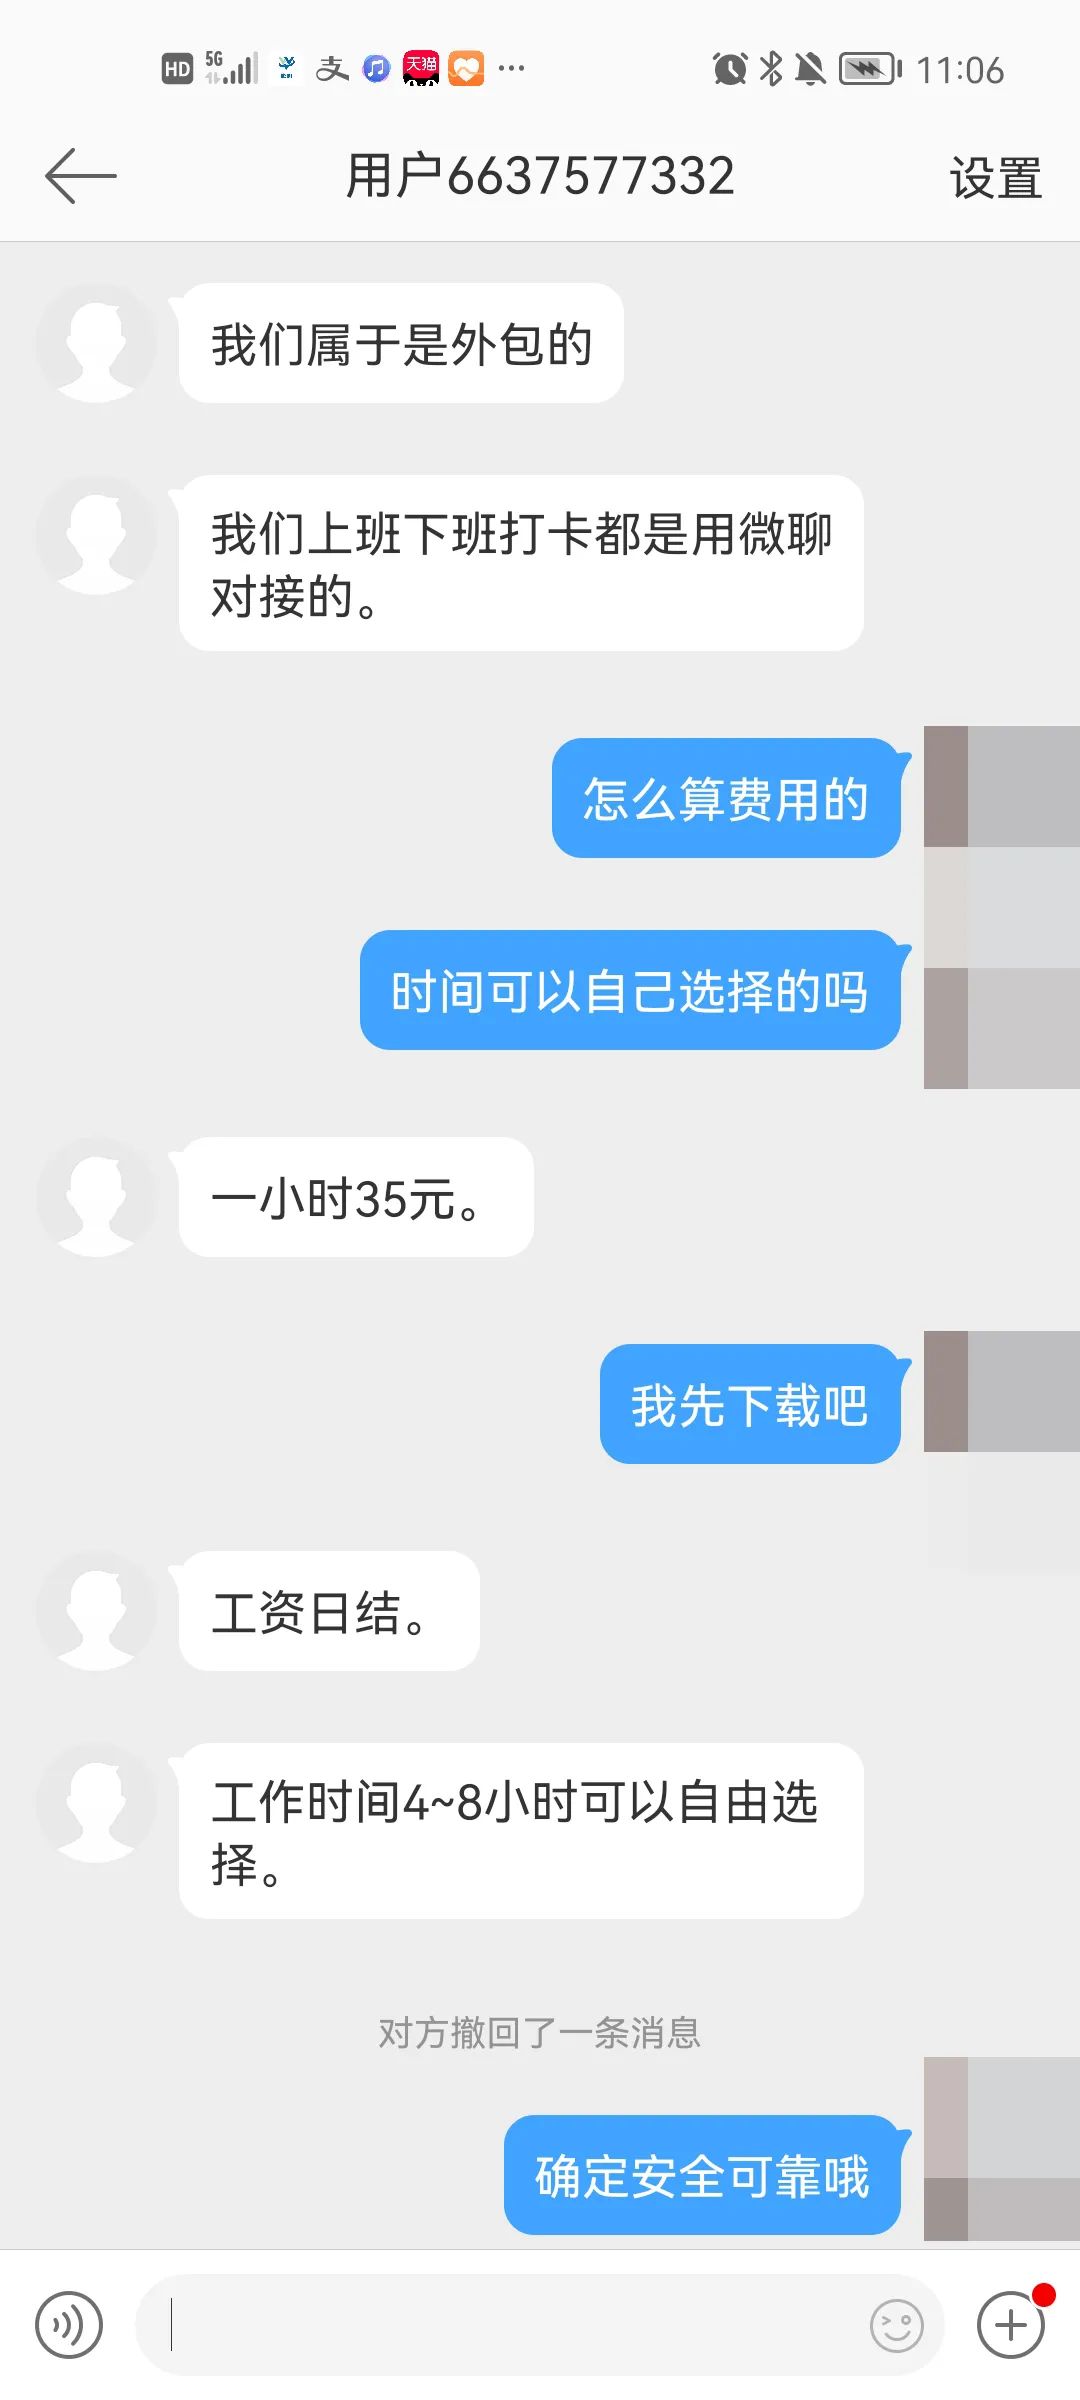 【专题】净网2020 严防网络诈骗 - 专题 - 温州网